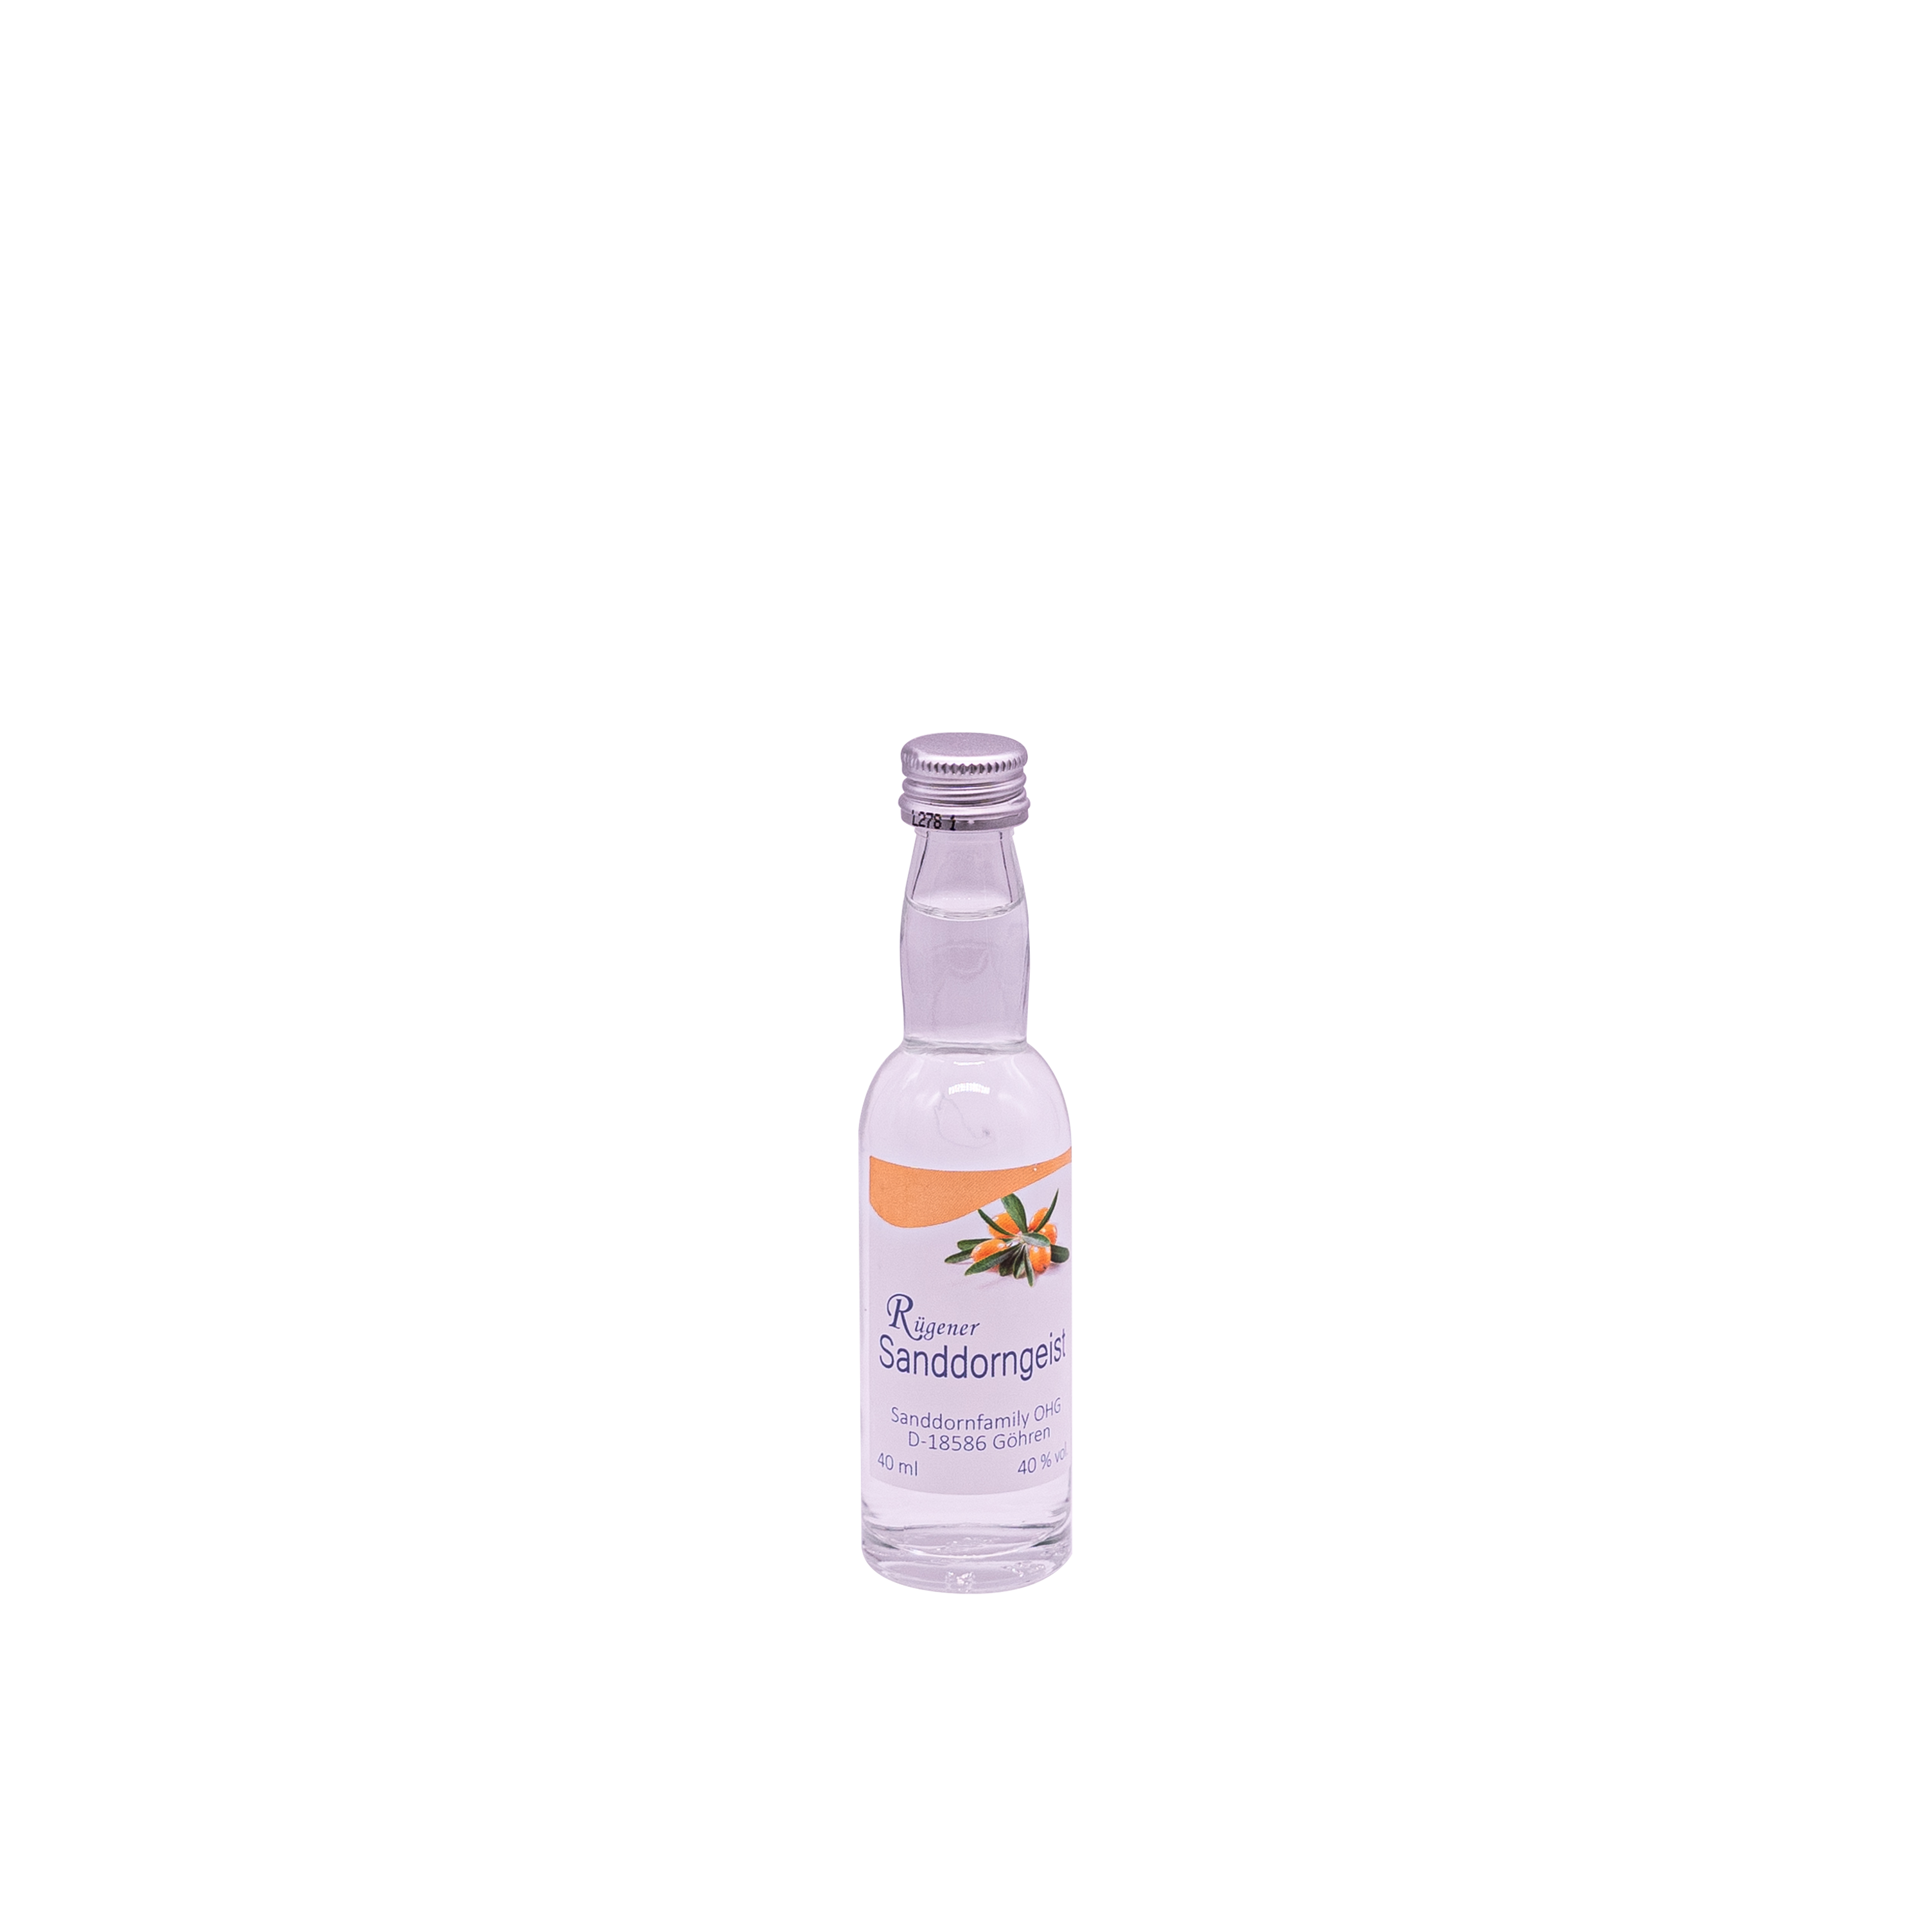 Sanddorn-Geist, 40%, 0.04l Kropfhalsflasche